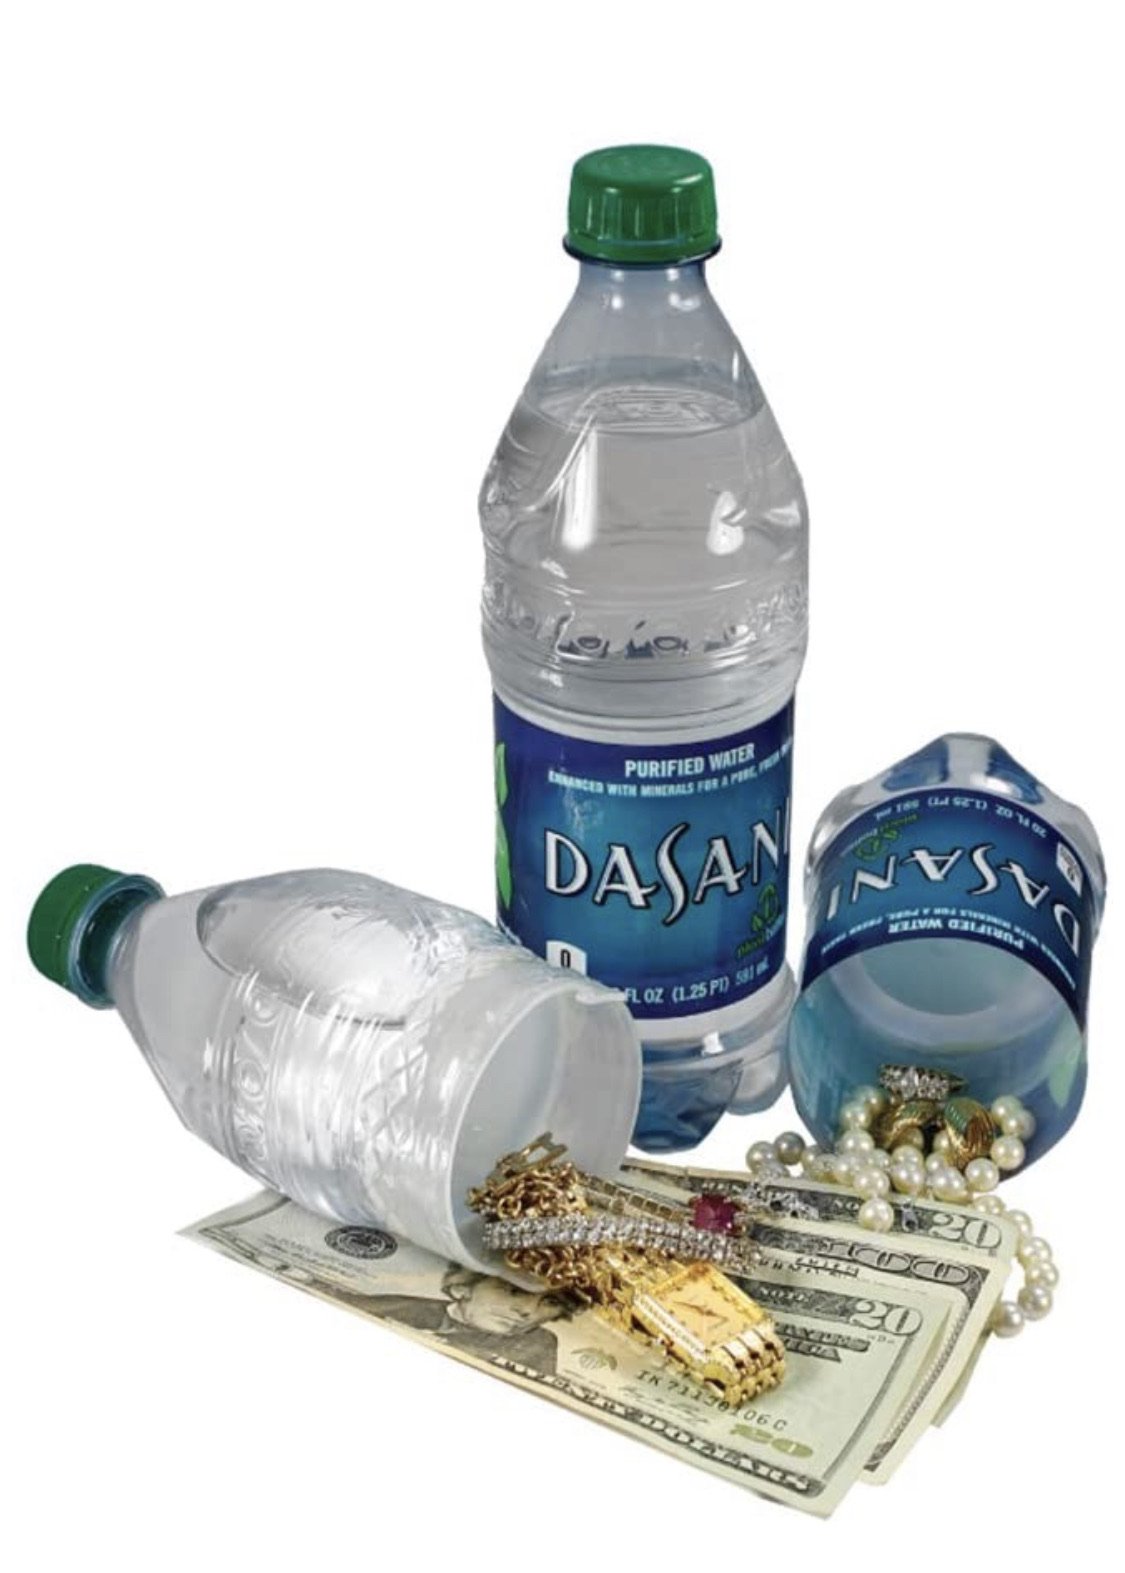 Dasani Concealment Water Bottle Diversion Safe Stash Safe - Concealment Cans